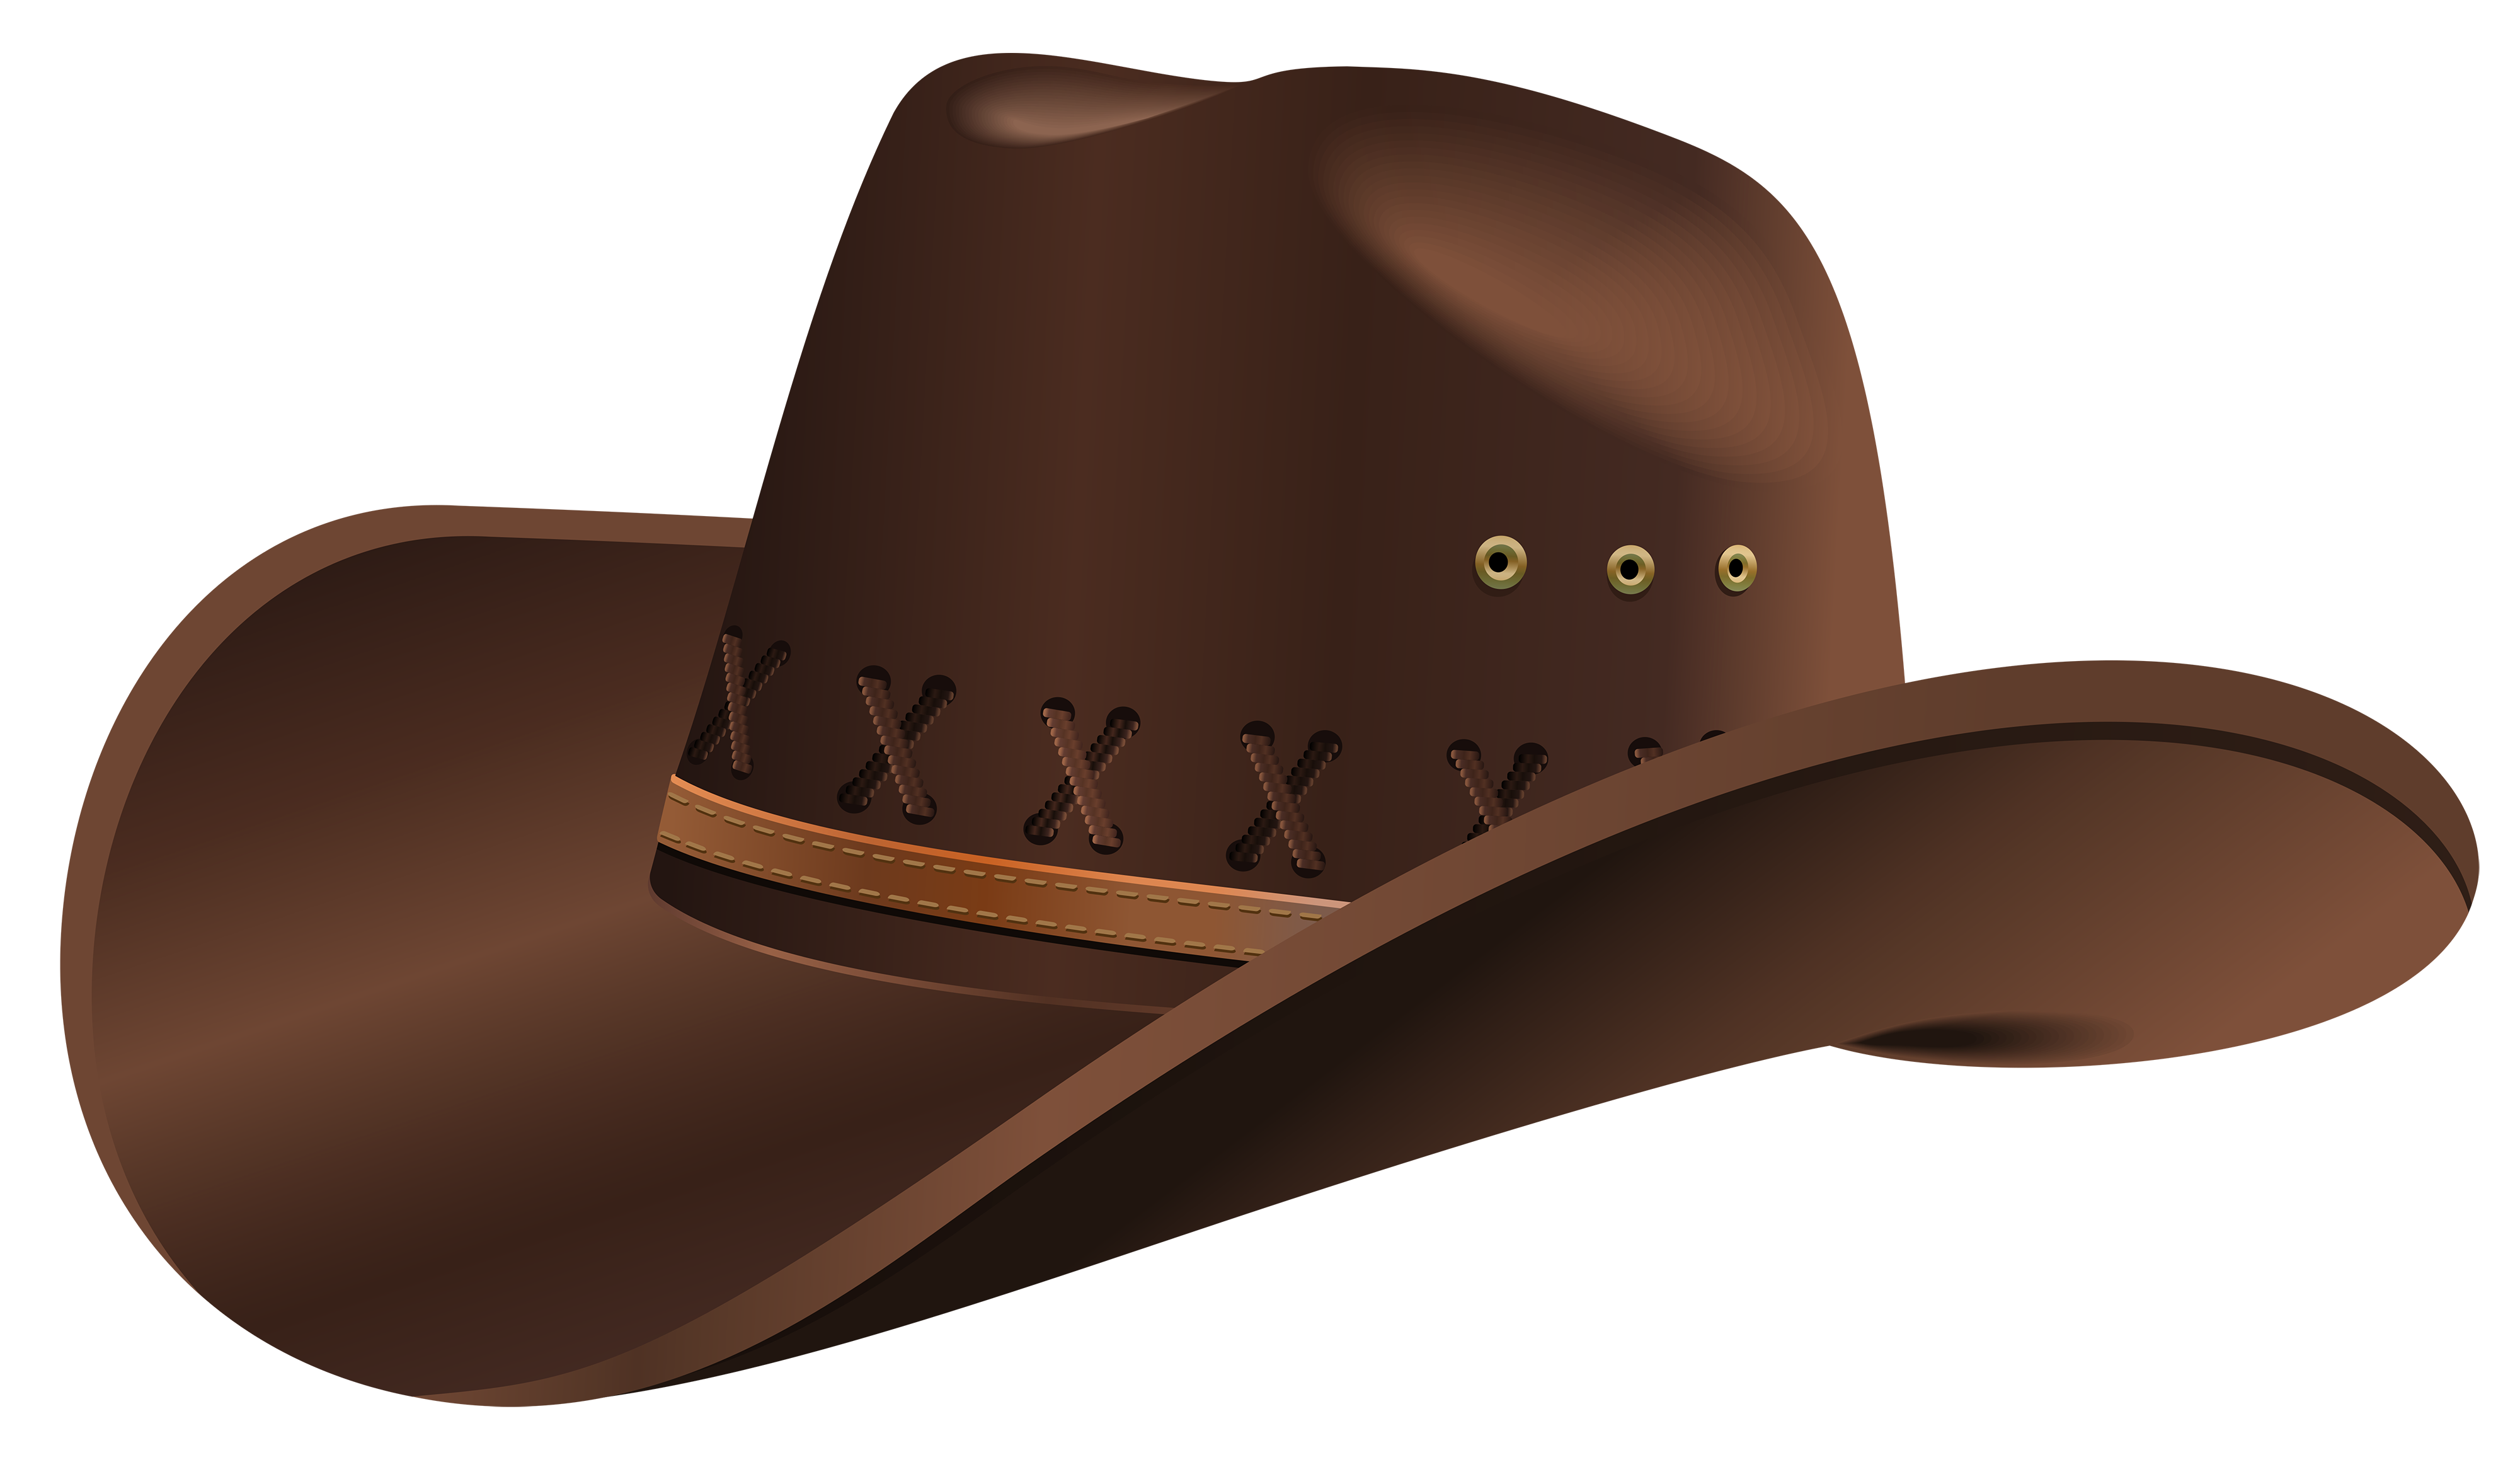 Cowboy hat Clip art.